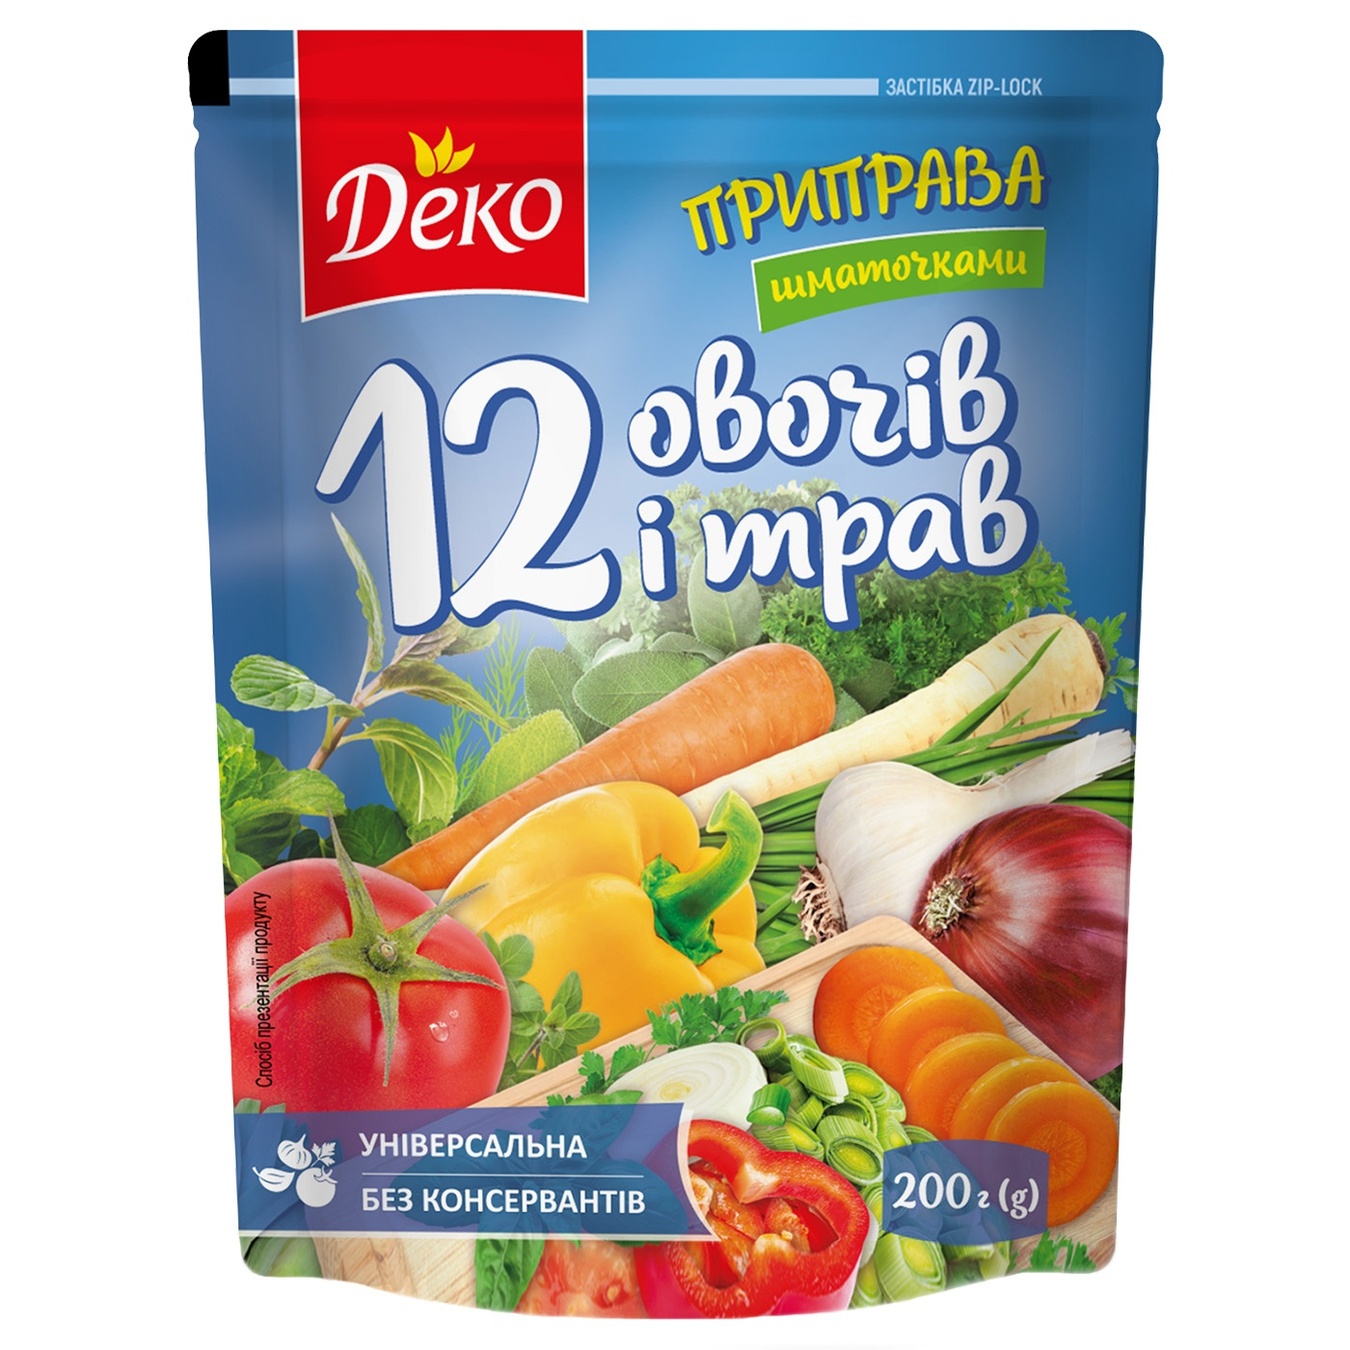 Seasoning Lubystok 12 Vegetables and herbs 200g